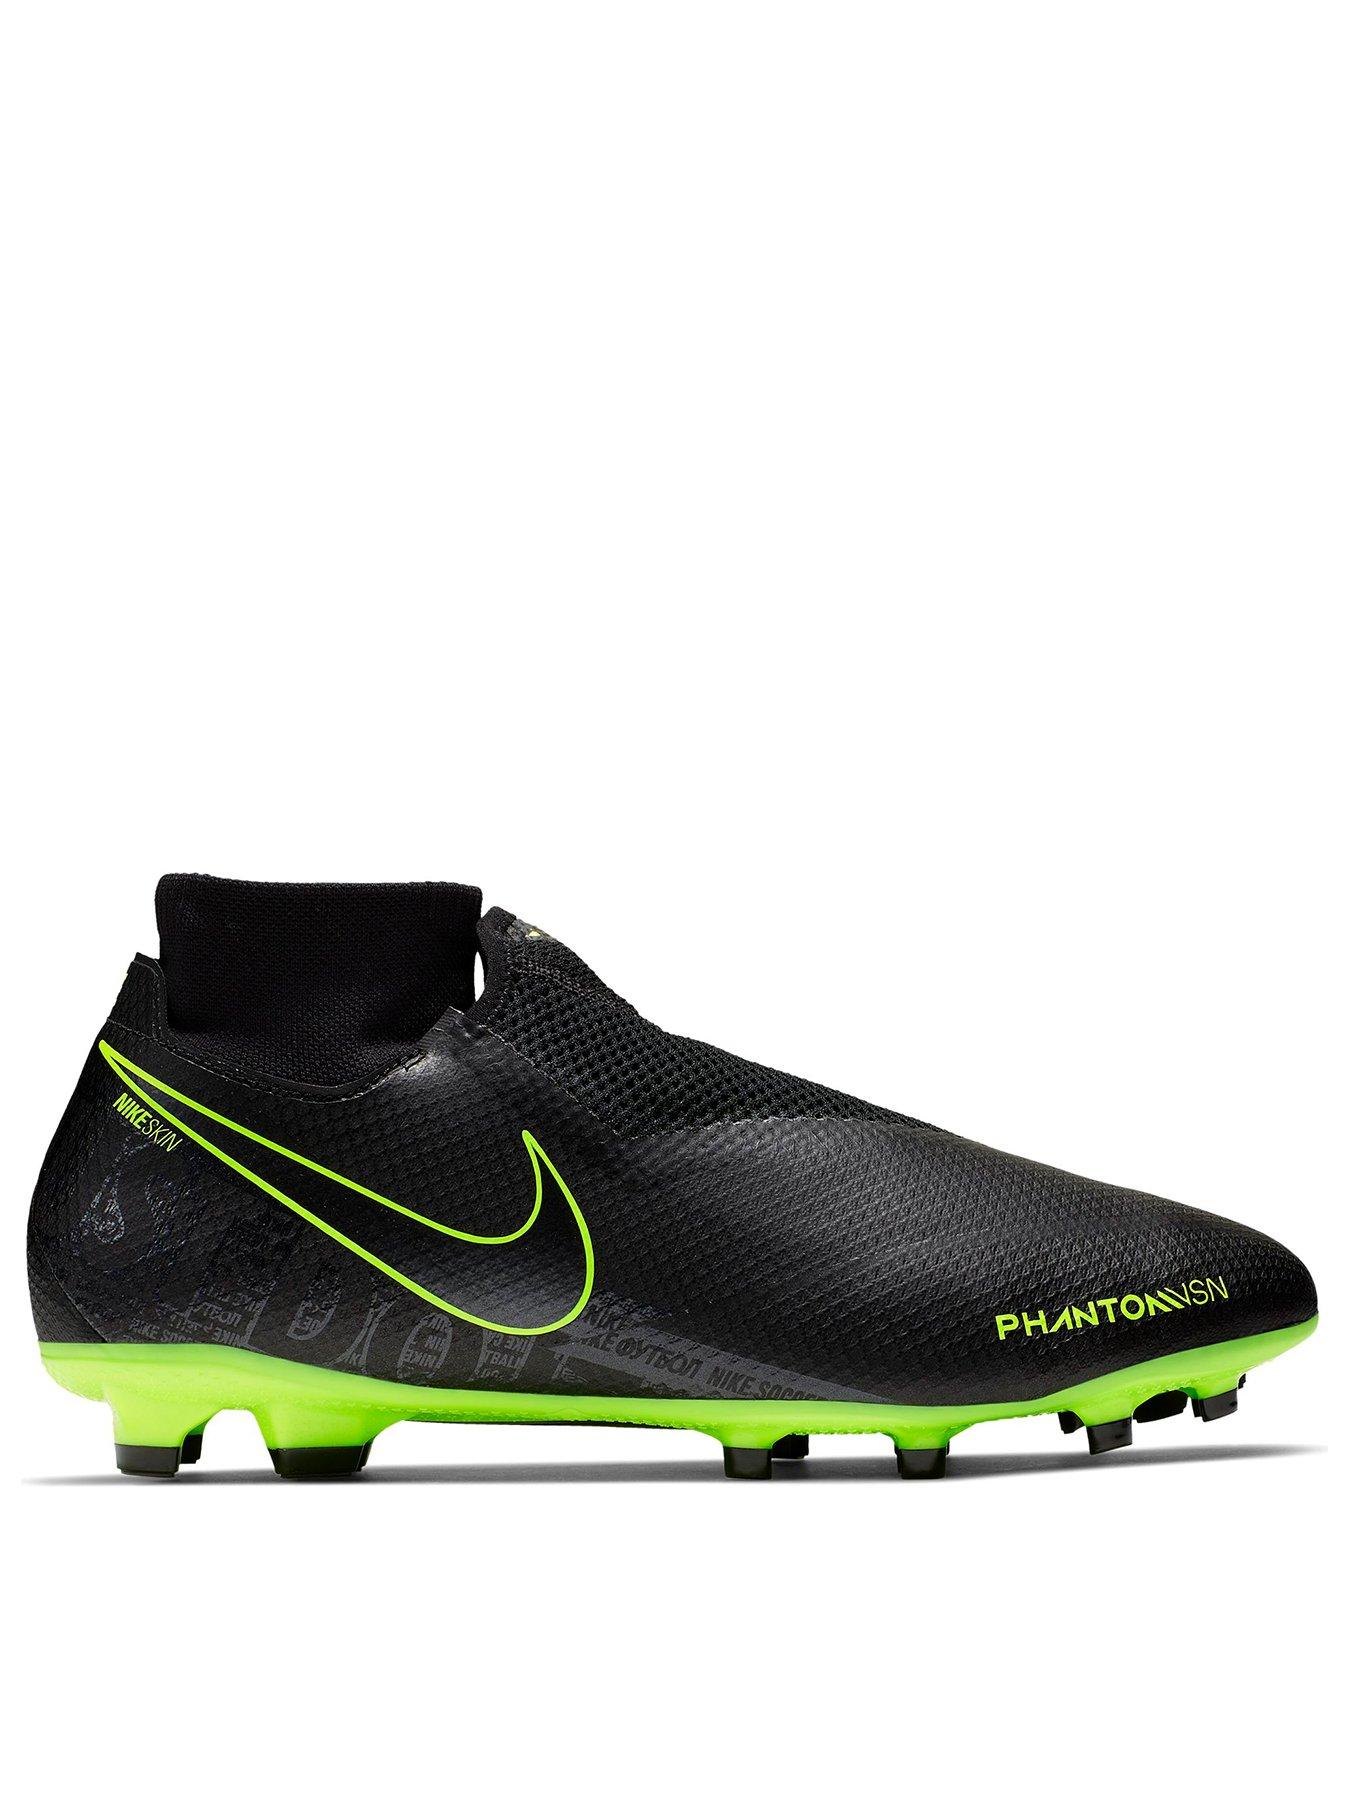 Nike Phantom Vision Elite DF AG PRO men's football boots